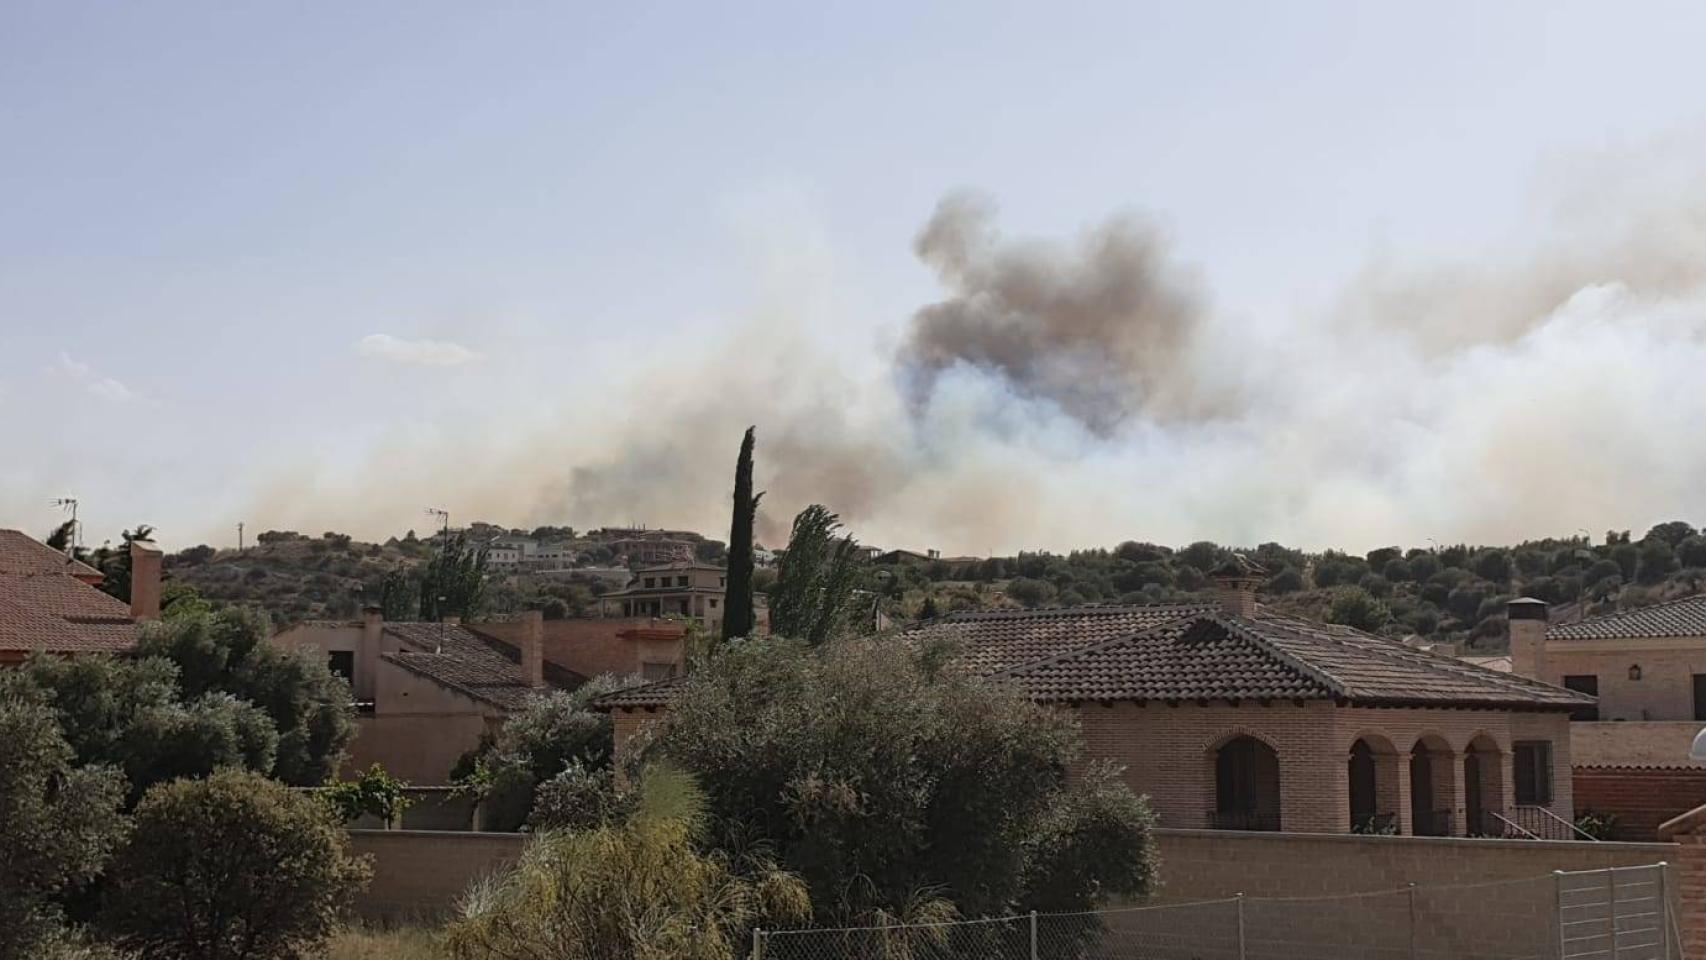 Incendio en la zona de Montesión de Toledo. Imagen del pasado viernes, cuando se inició el fuego